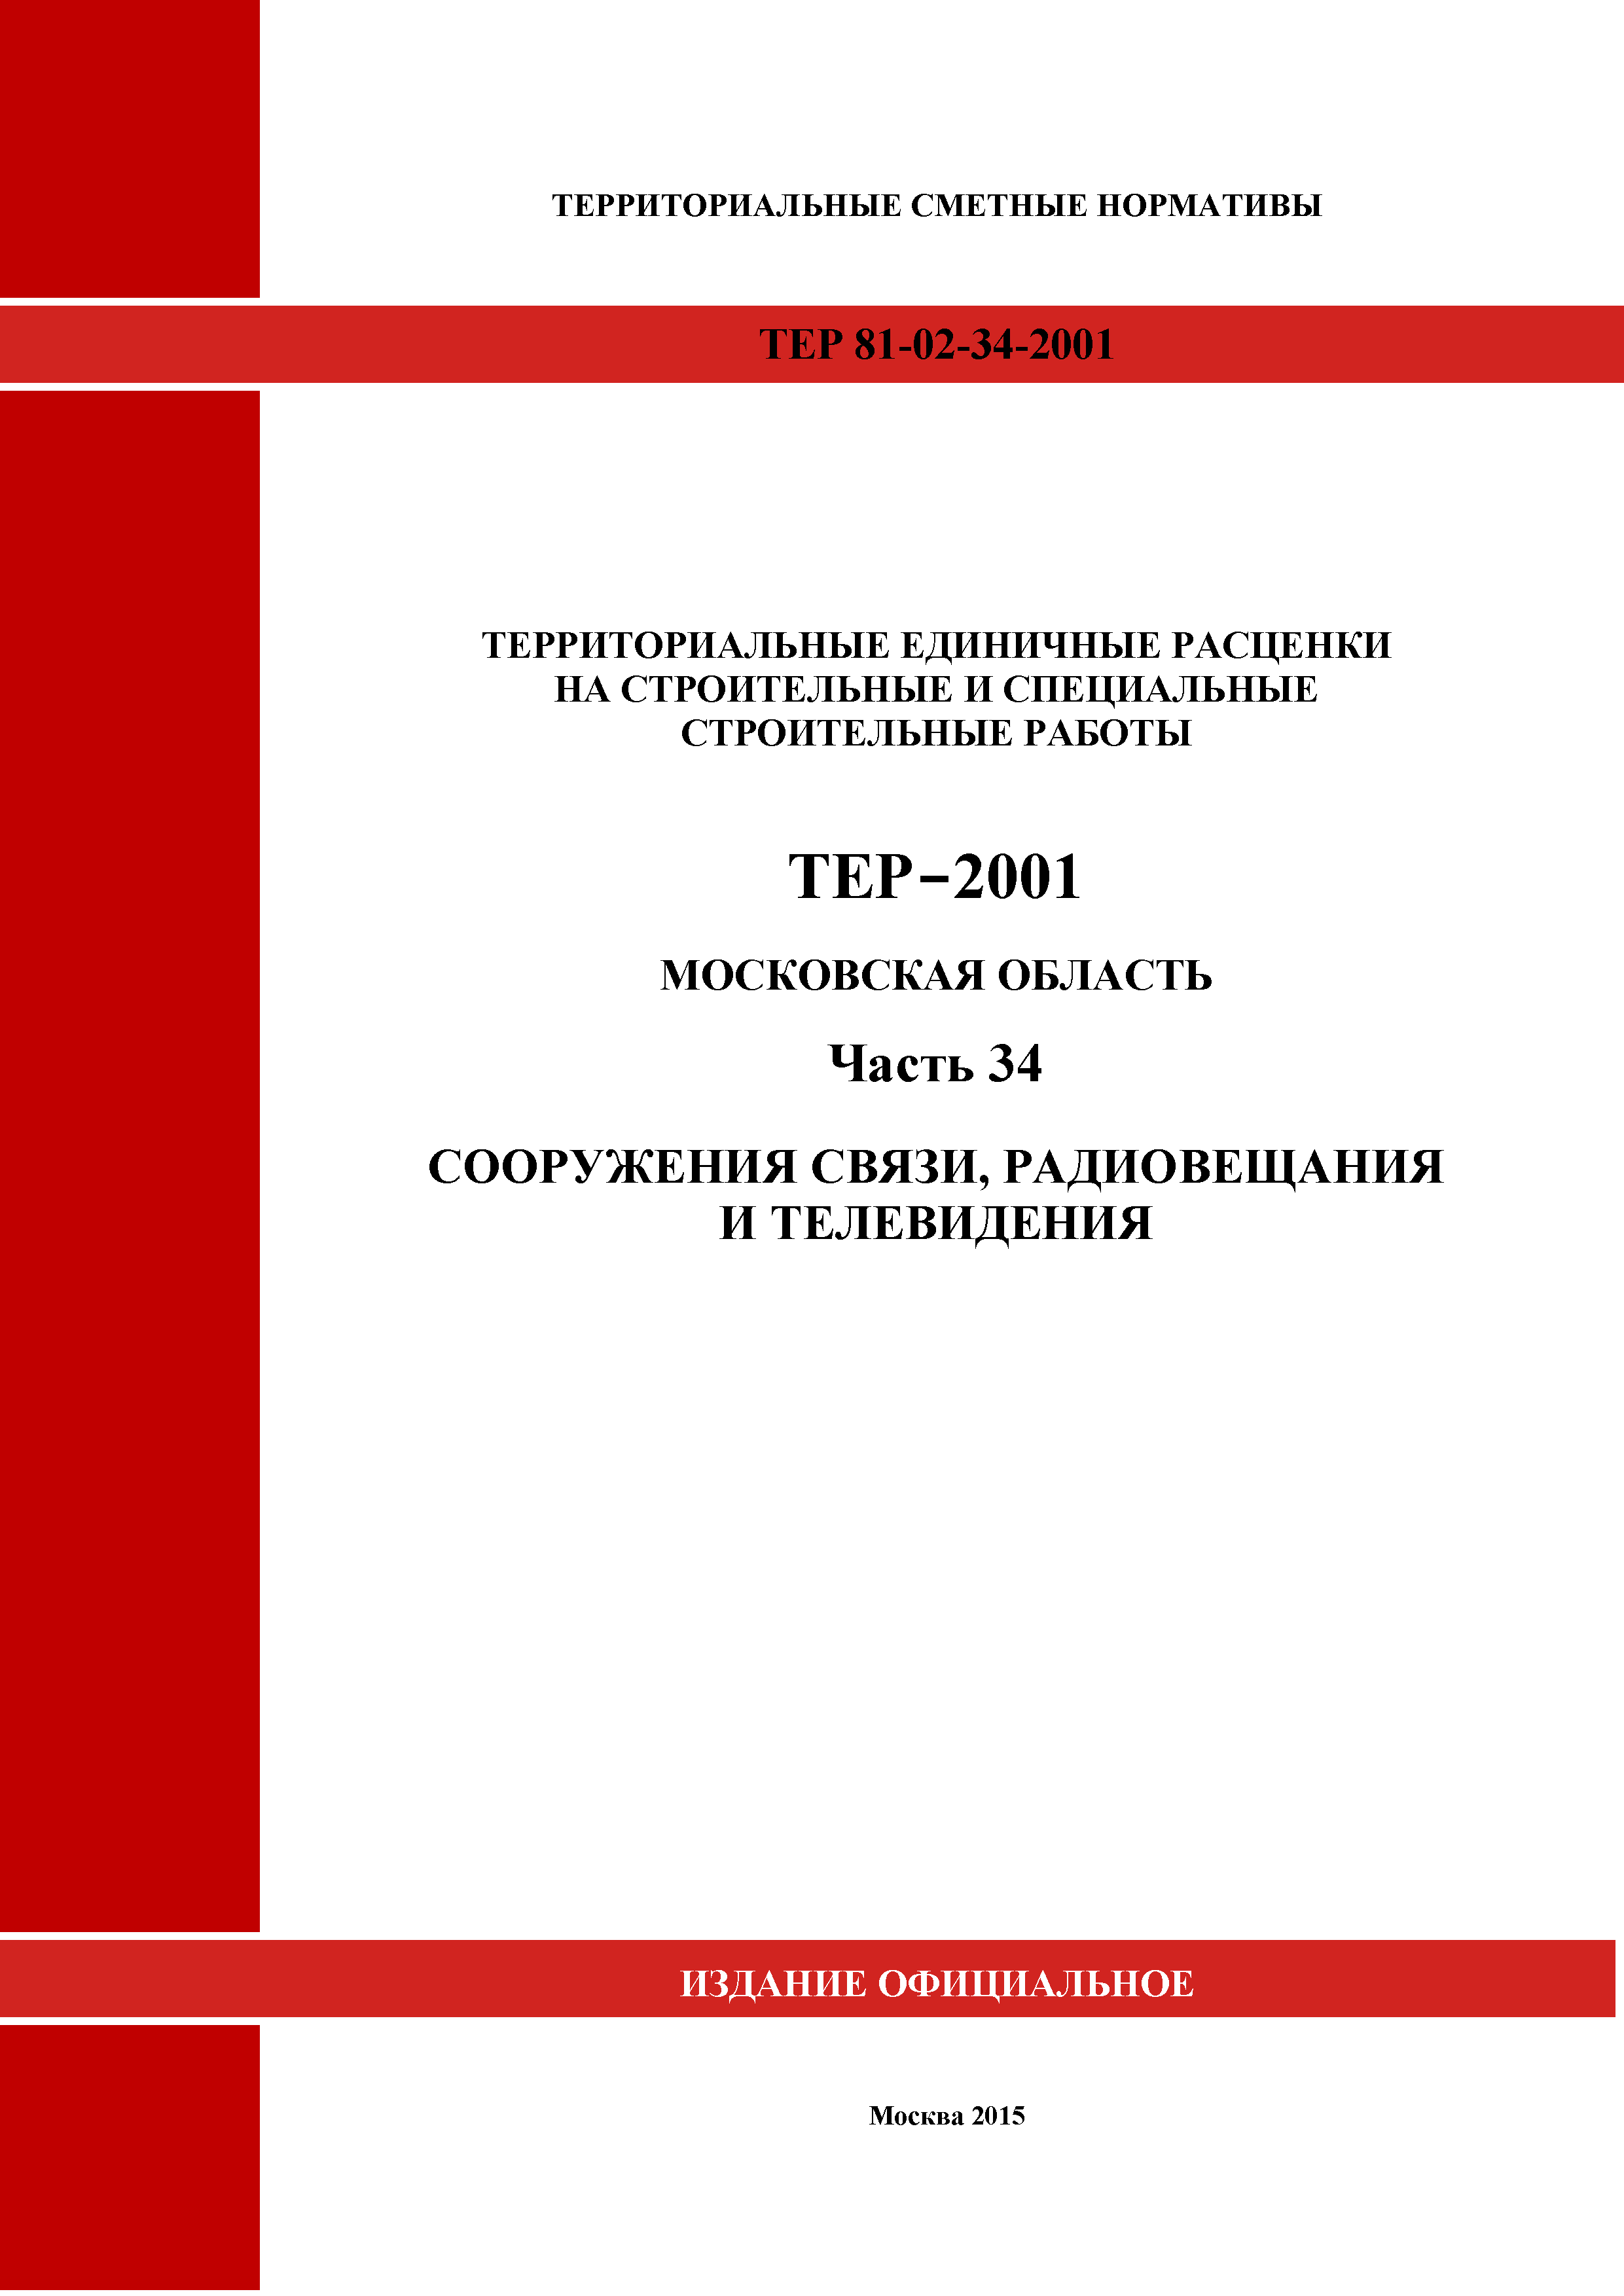 ТЕР 34-2001 Московской области